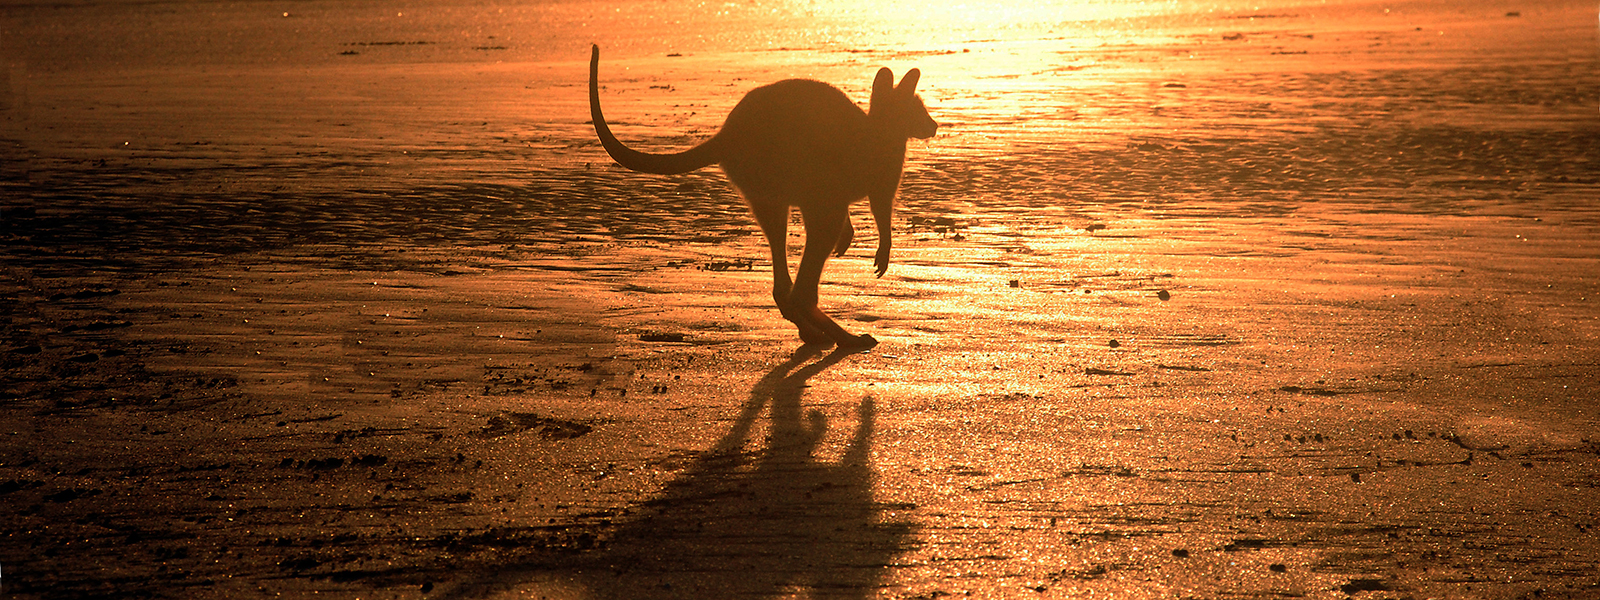 Журнал/Какие опасности (и неожиданности) подстерегают на пляжах Австралии